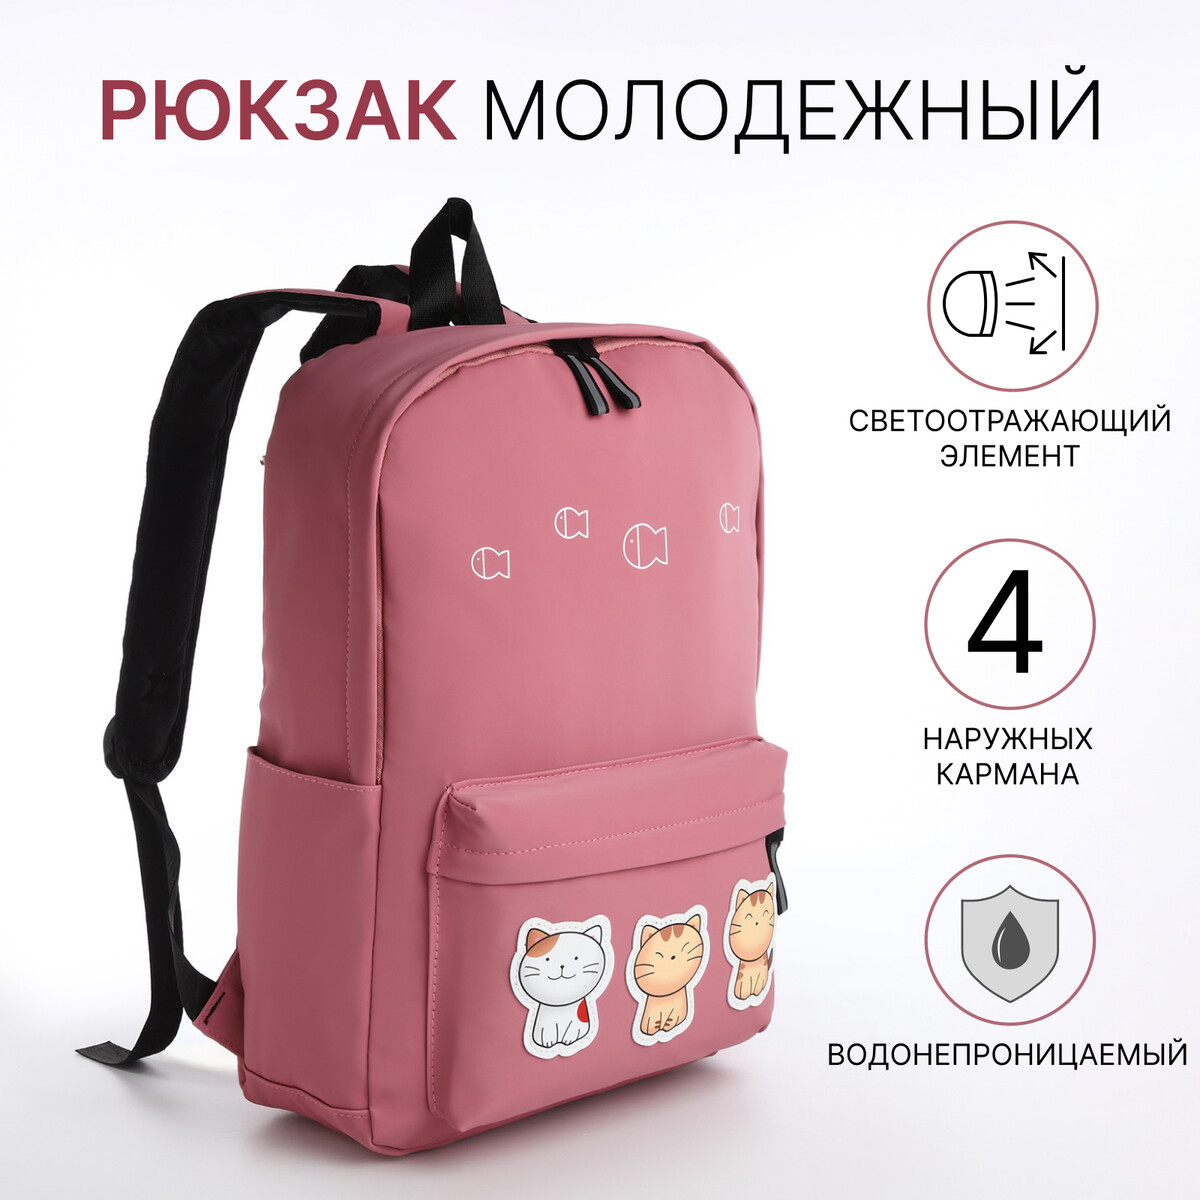 Рюкзак молодежный из текстиля на молнии, 4 кармана, цвет розовый